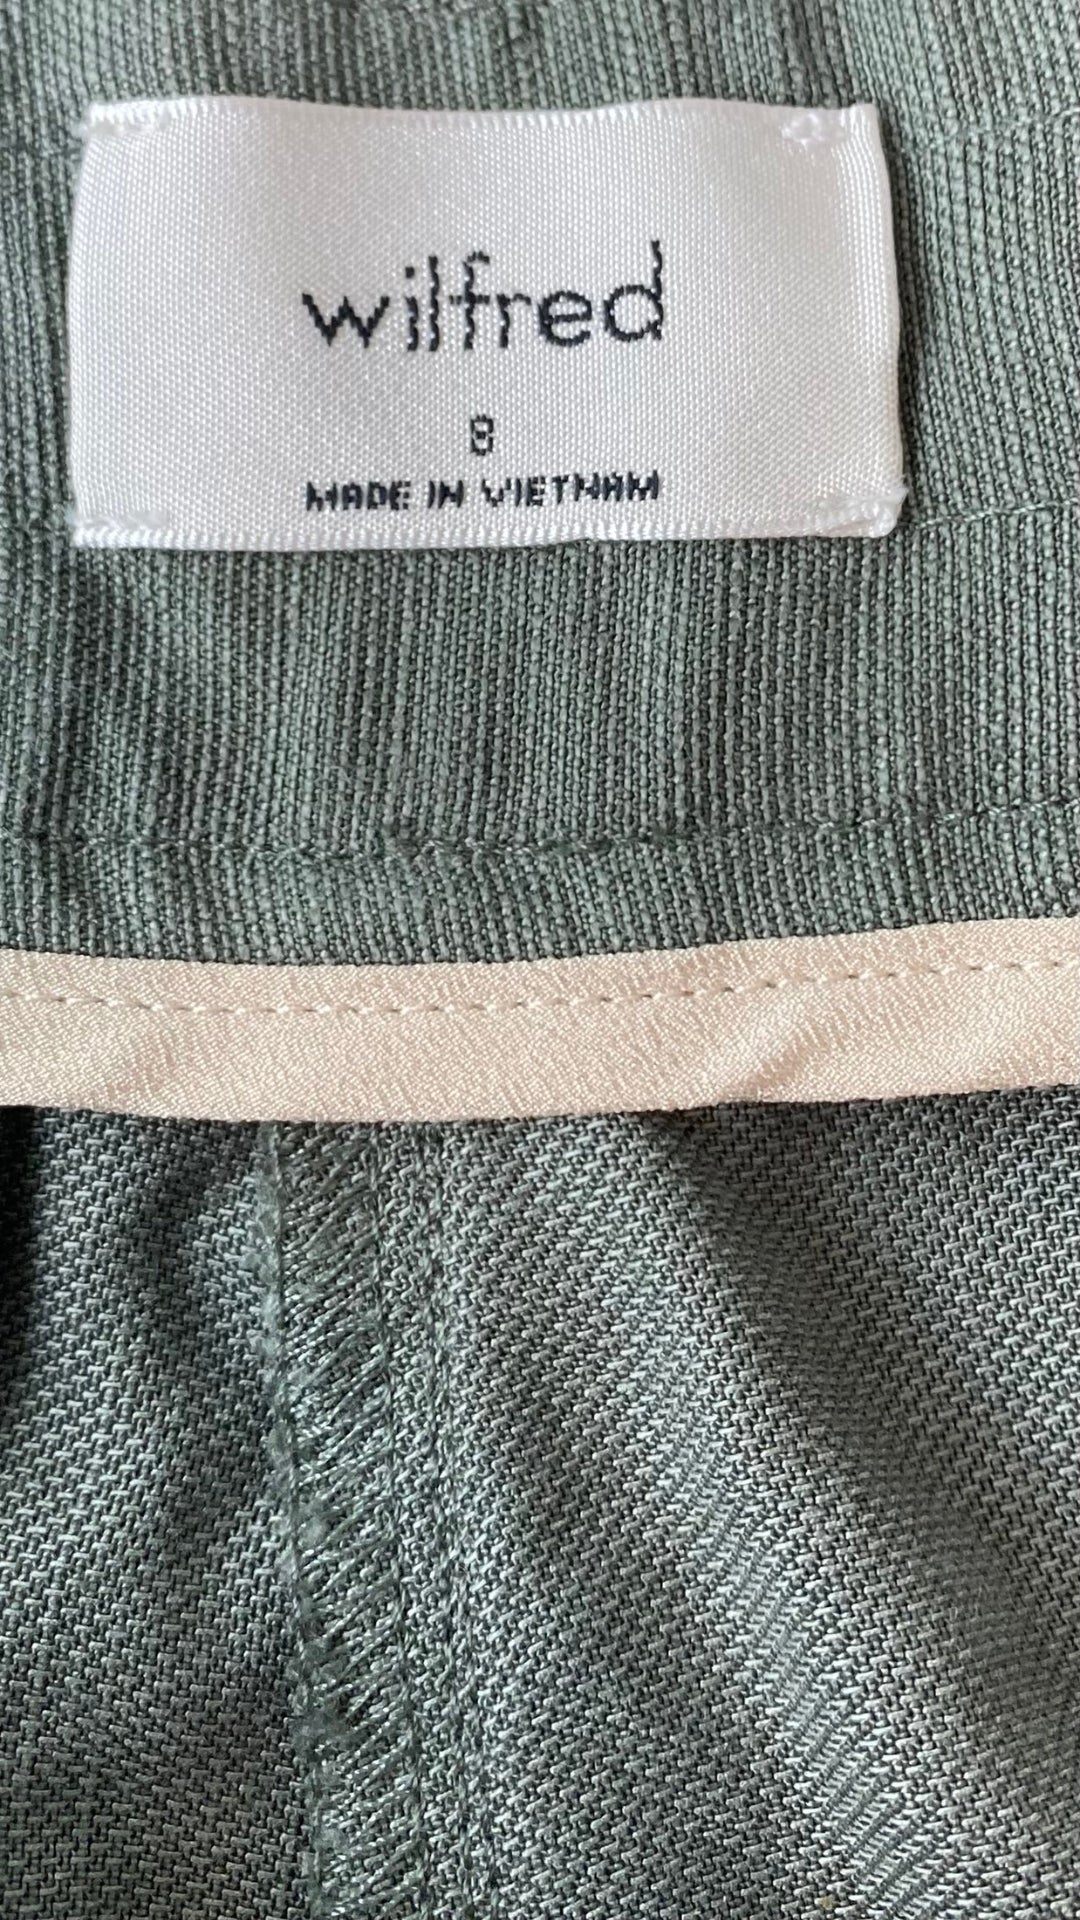 Pantalon vert en lyocell et lin Wilfred, taille 8. Vue de l'étiquette de marque et taille.